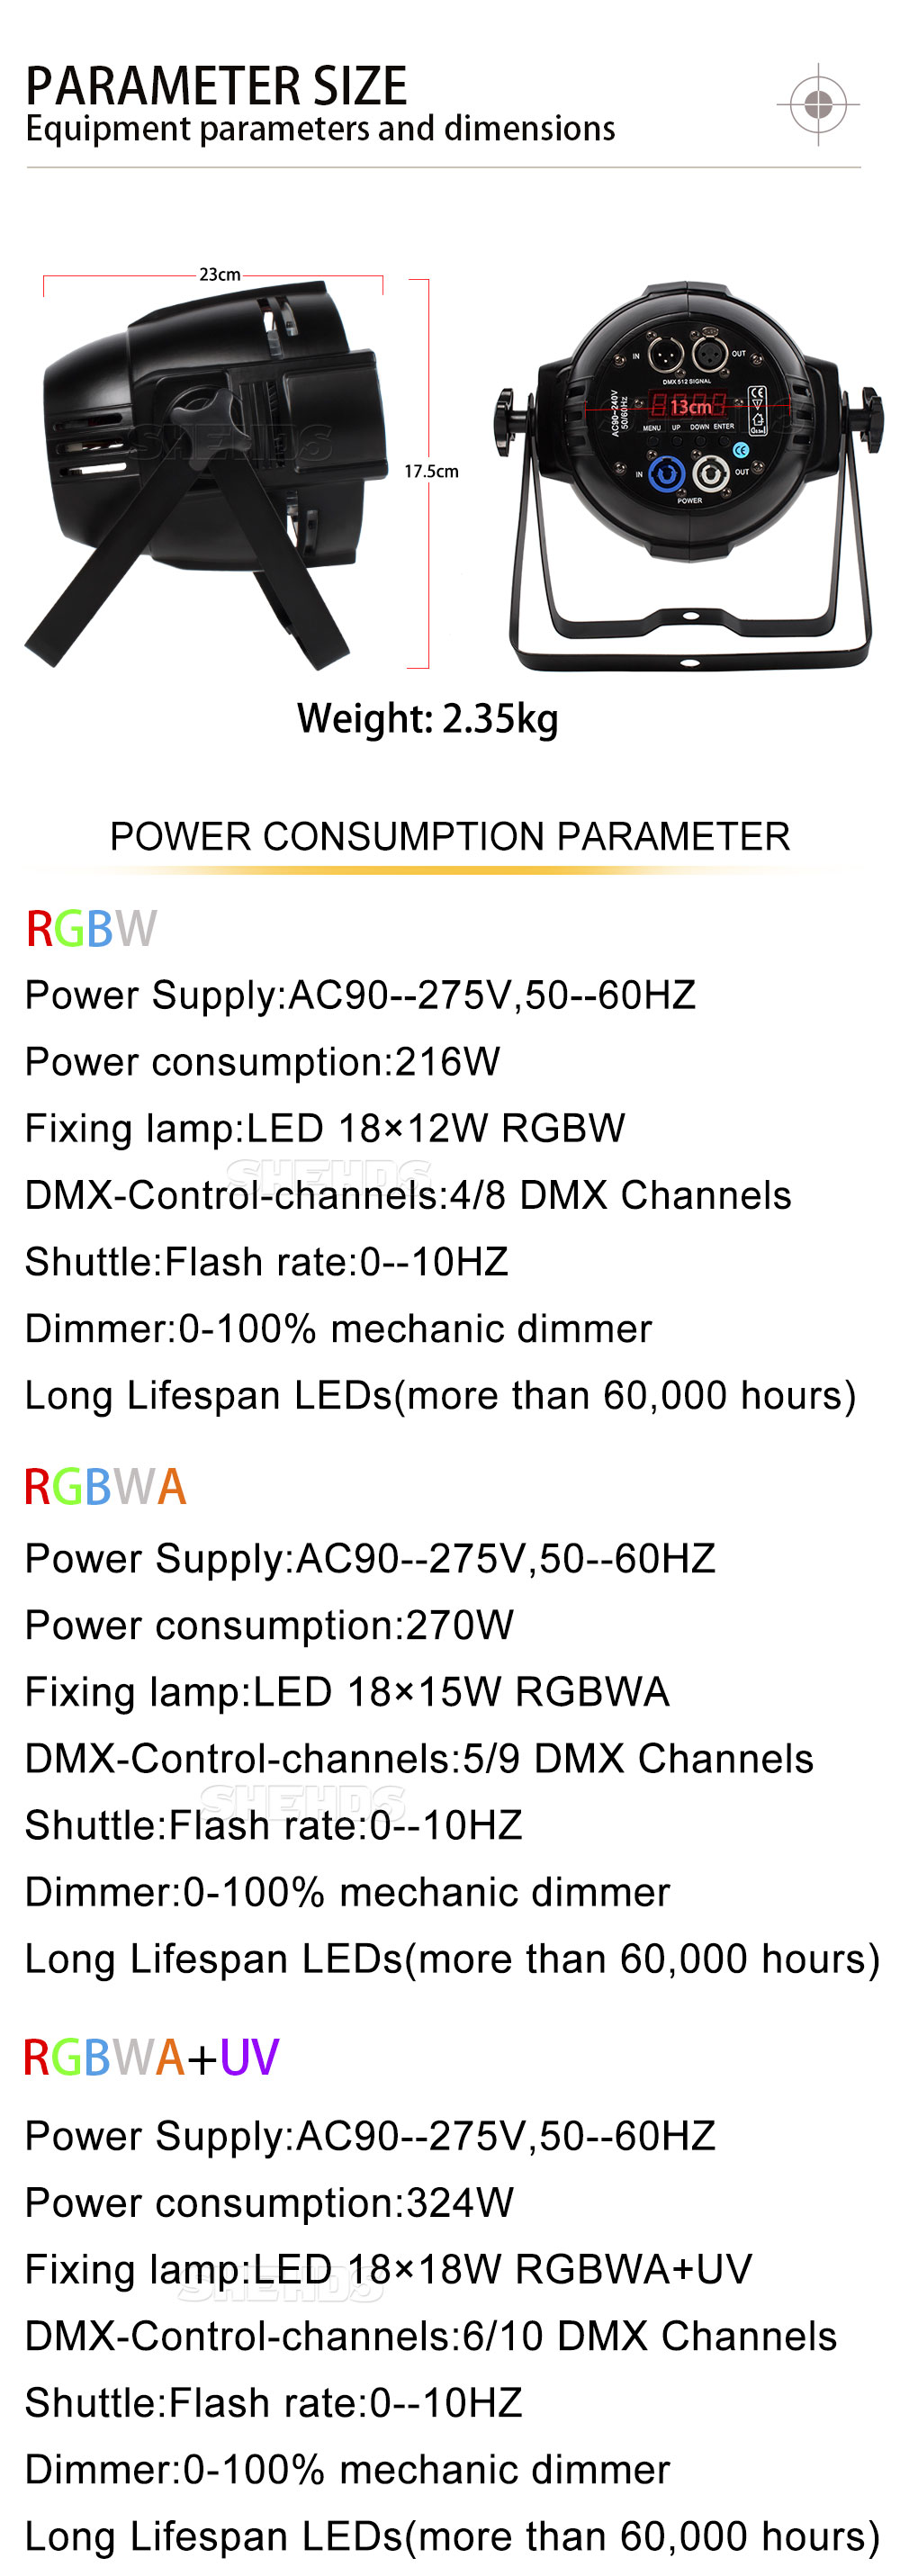 BARRA LED EXTERIOR 18 LEDS DE 15W RBGWA UV SL PROLIGHTING